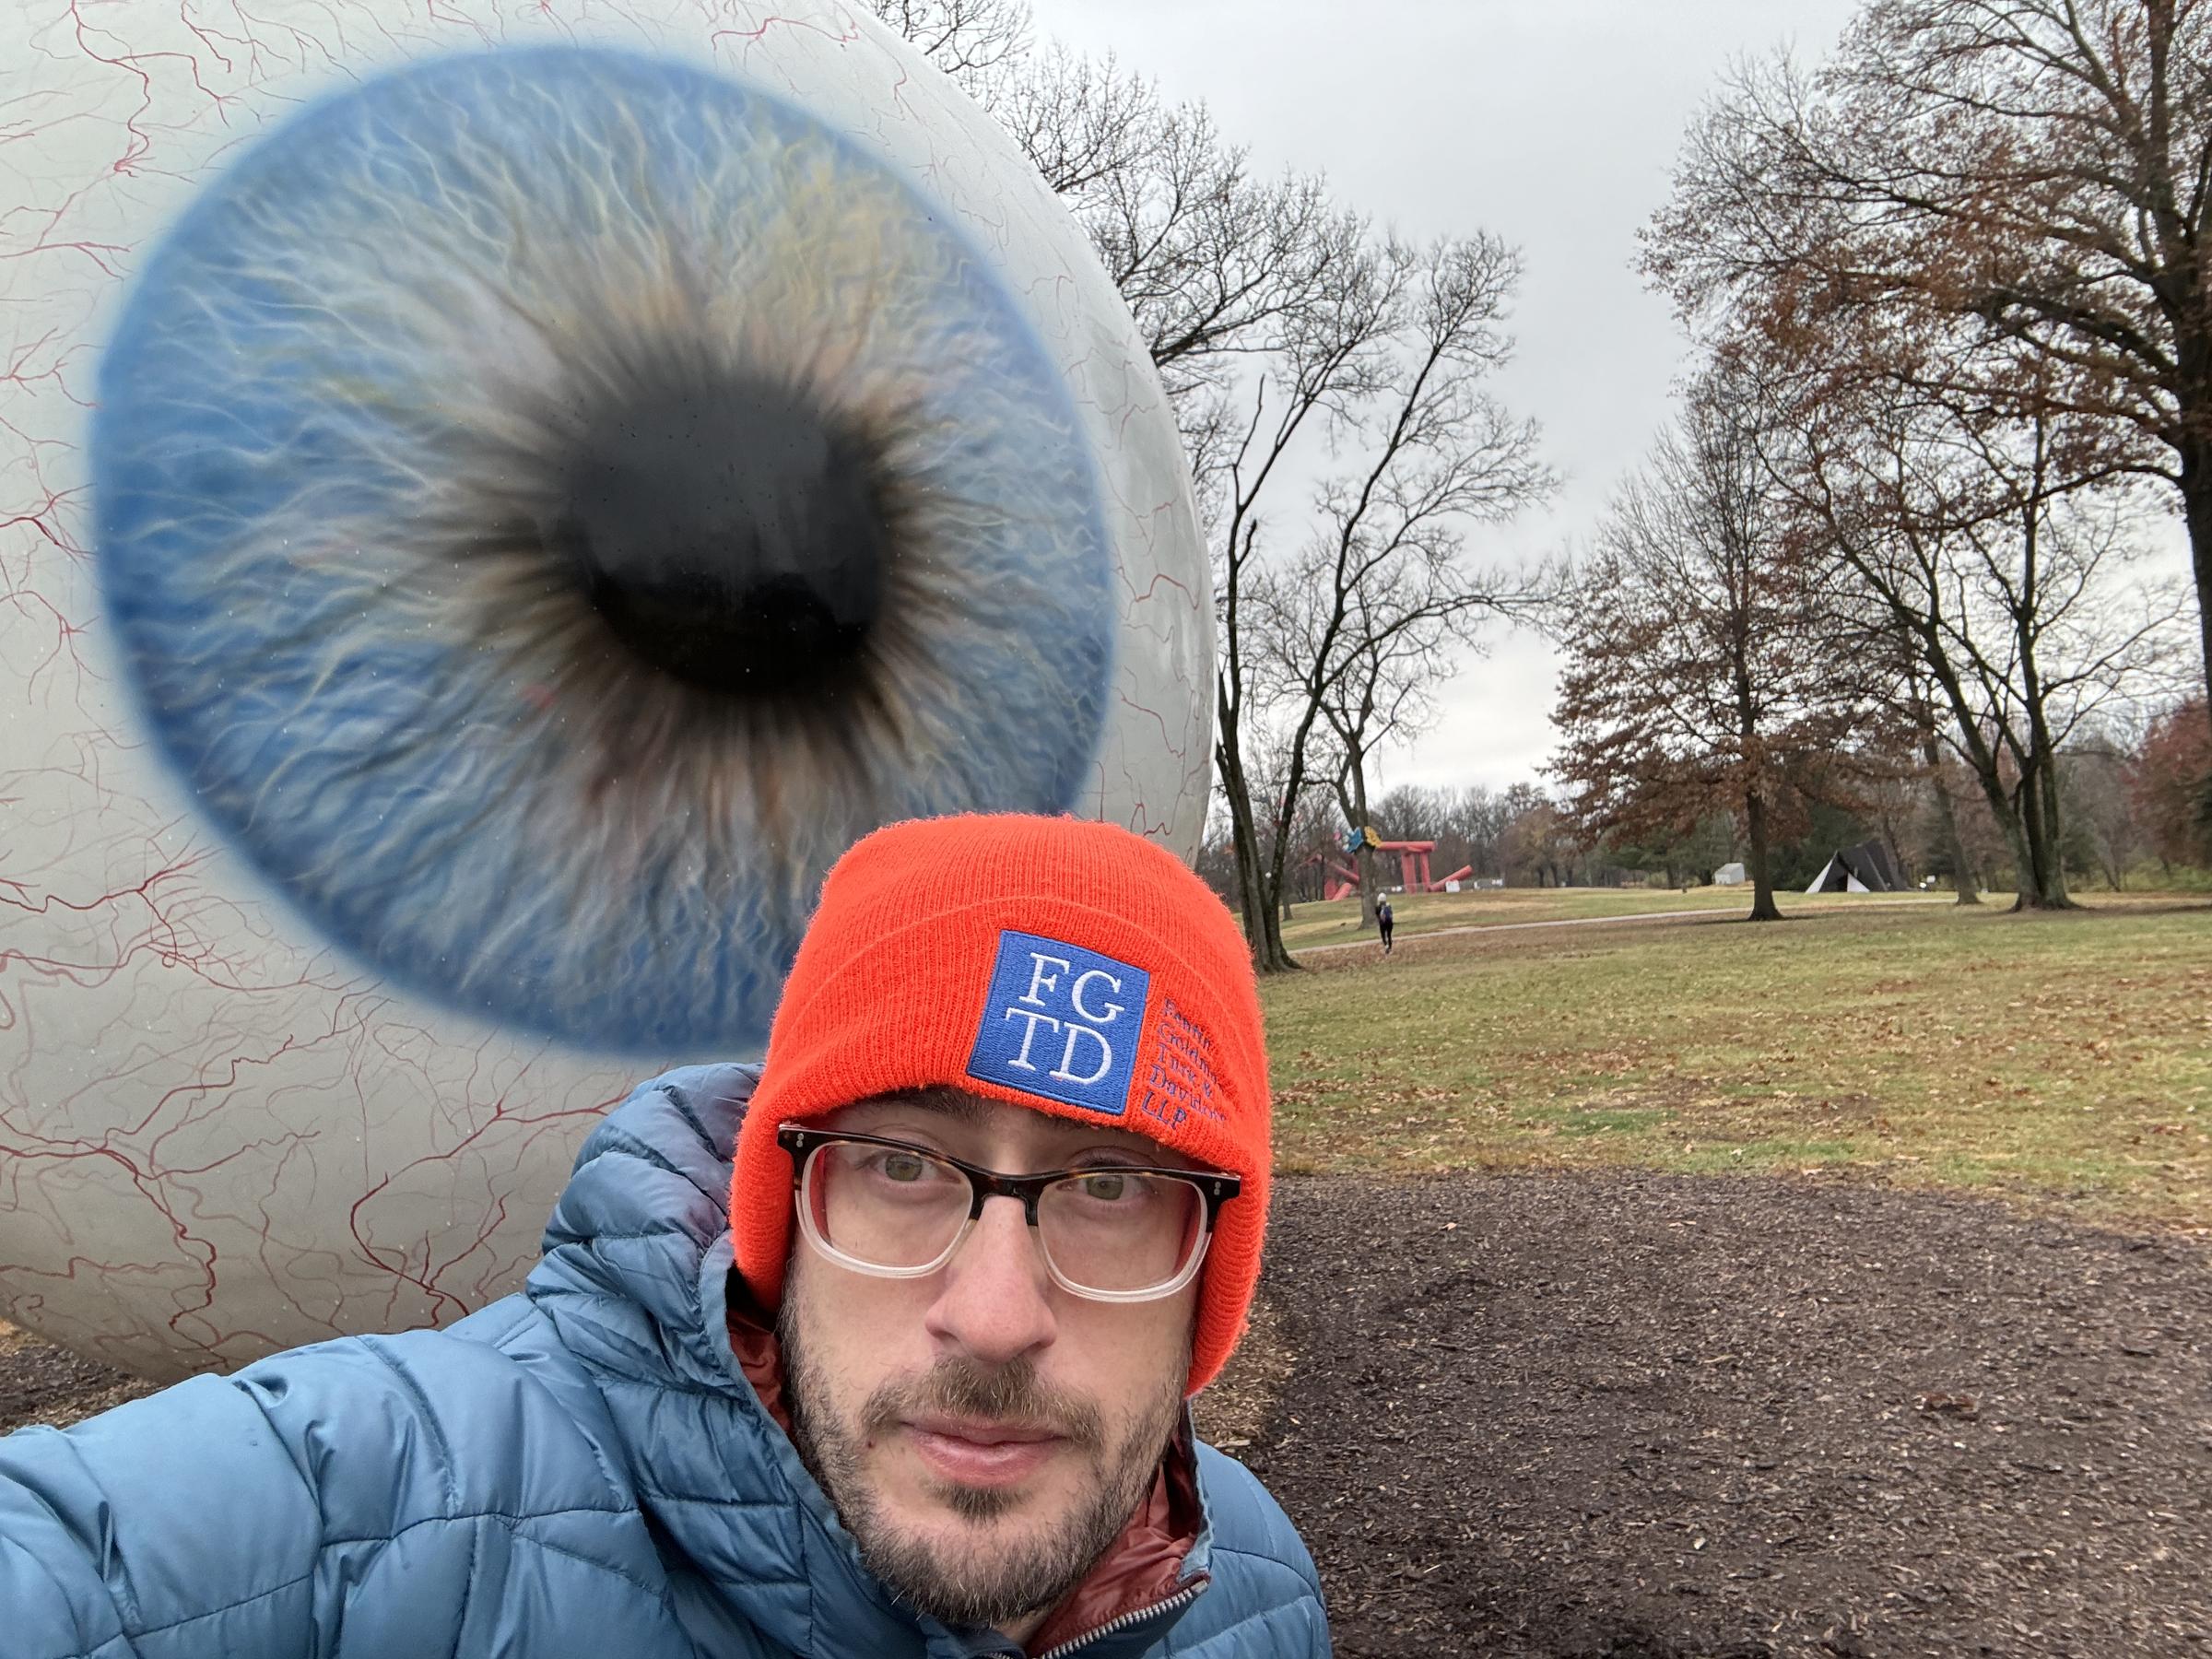 Laumeier Sculpture Park selfie